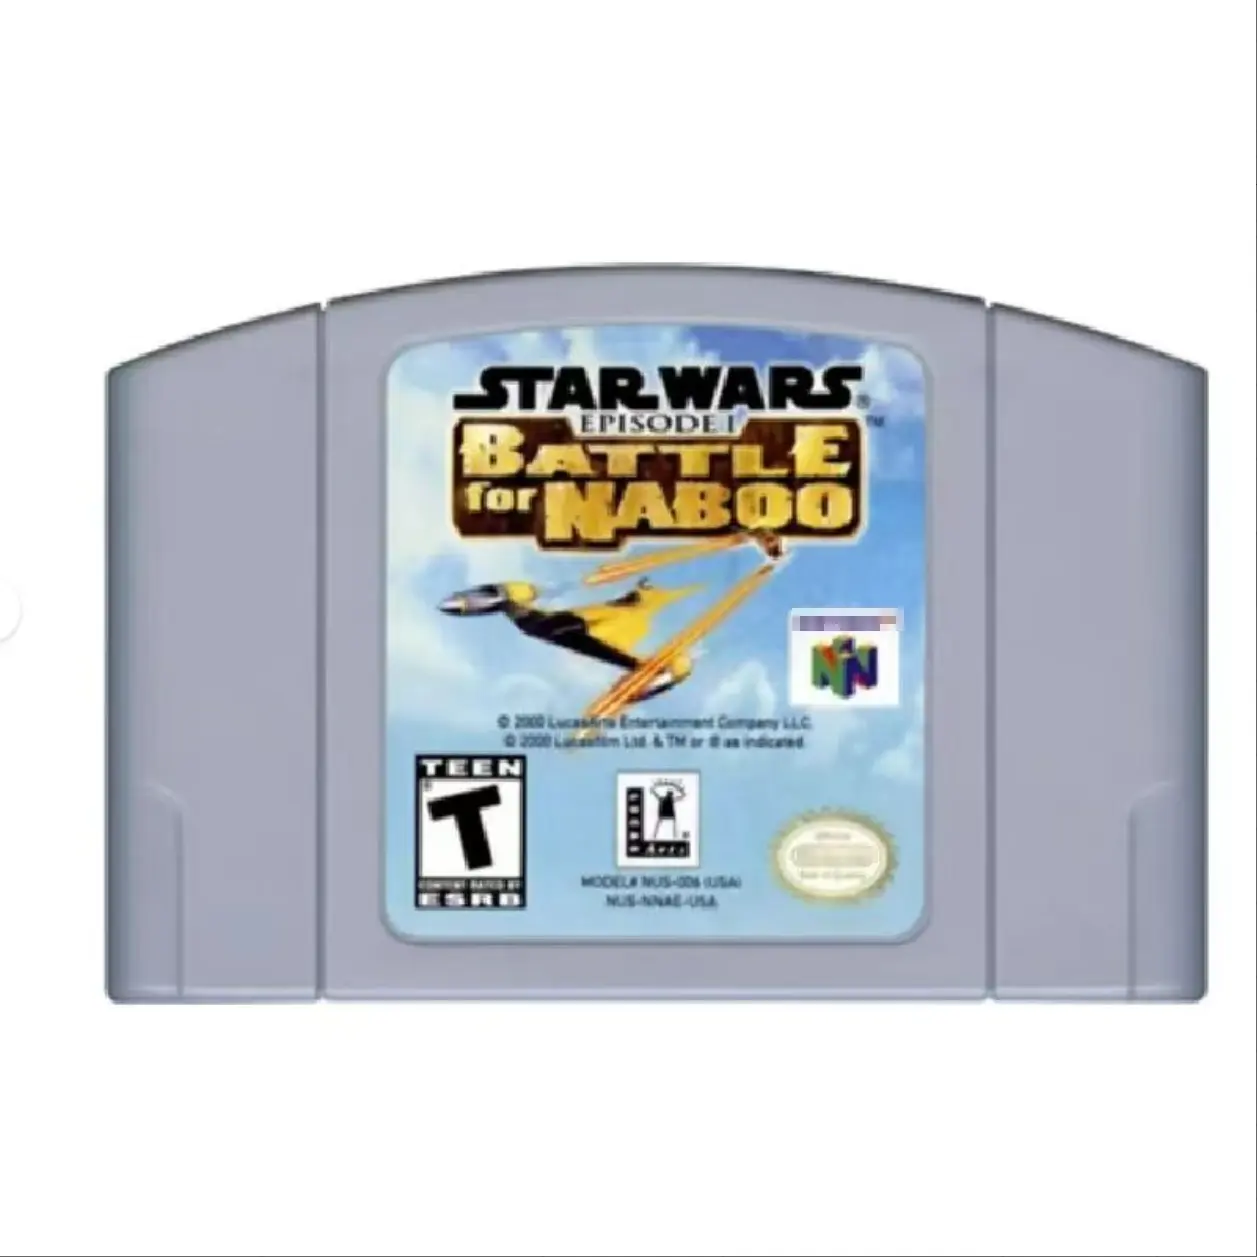 Starwars Aflevering I - Battle For Naboo N64 Game Cartridge Kaart Voor Nintendo 64 Us Versie